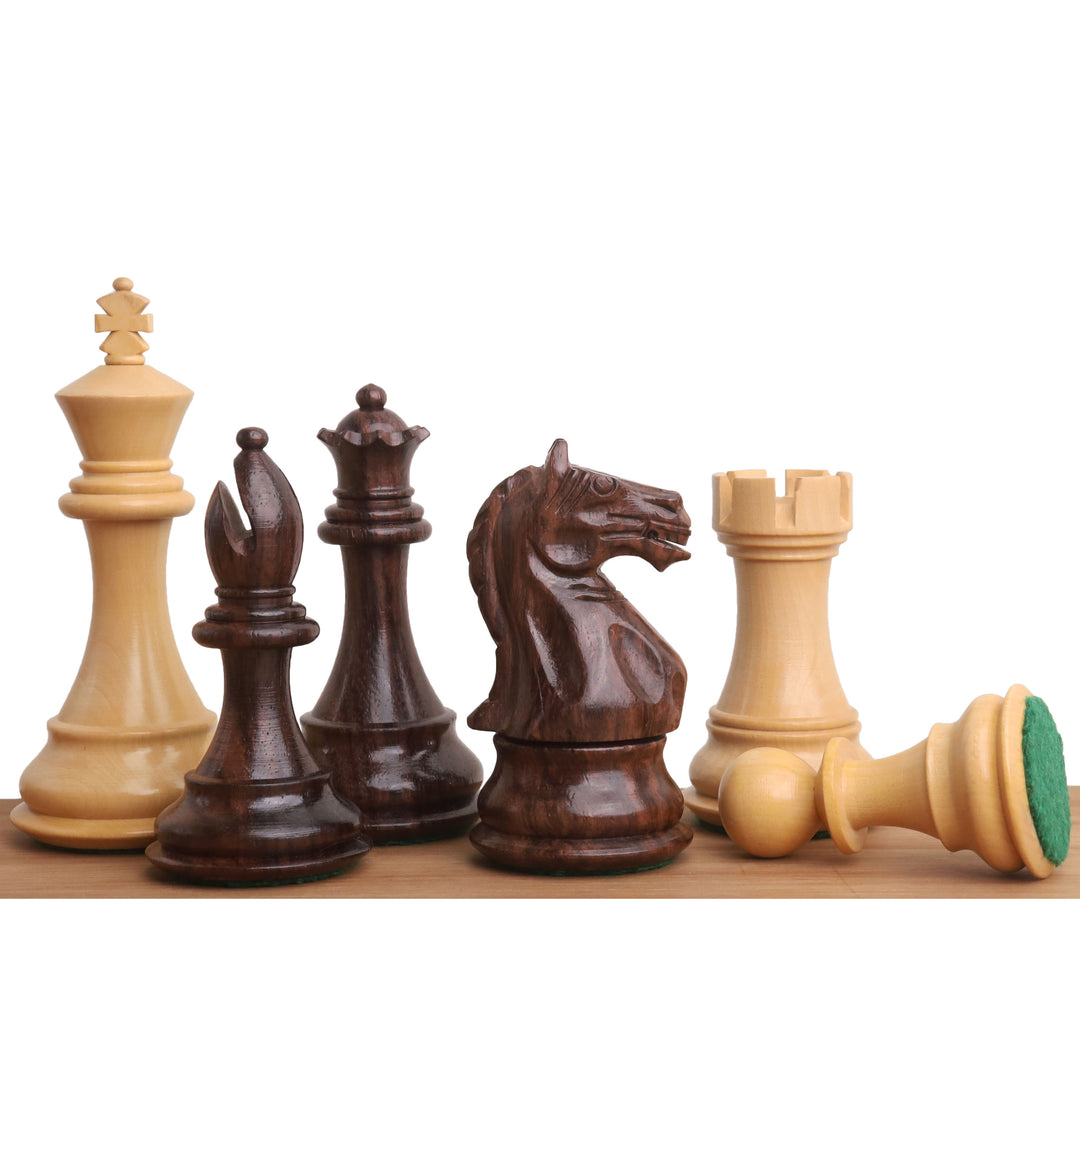 Jeu d'échecs 4" Fierce Knight Staunton - Pièces d'échecs uniquement - Bois de rose lesté